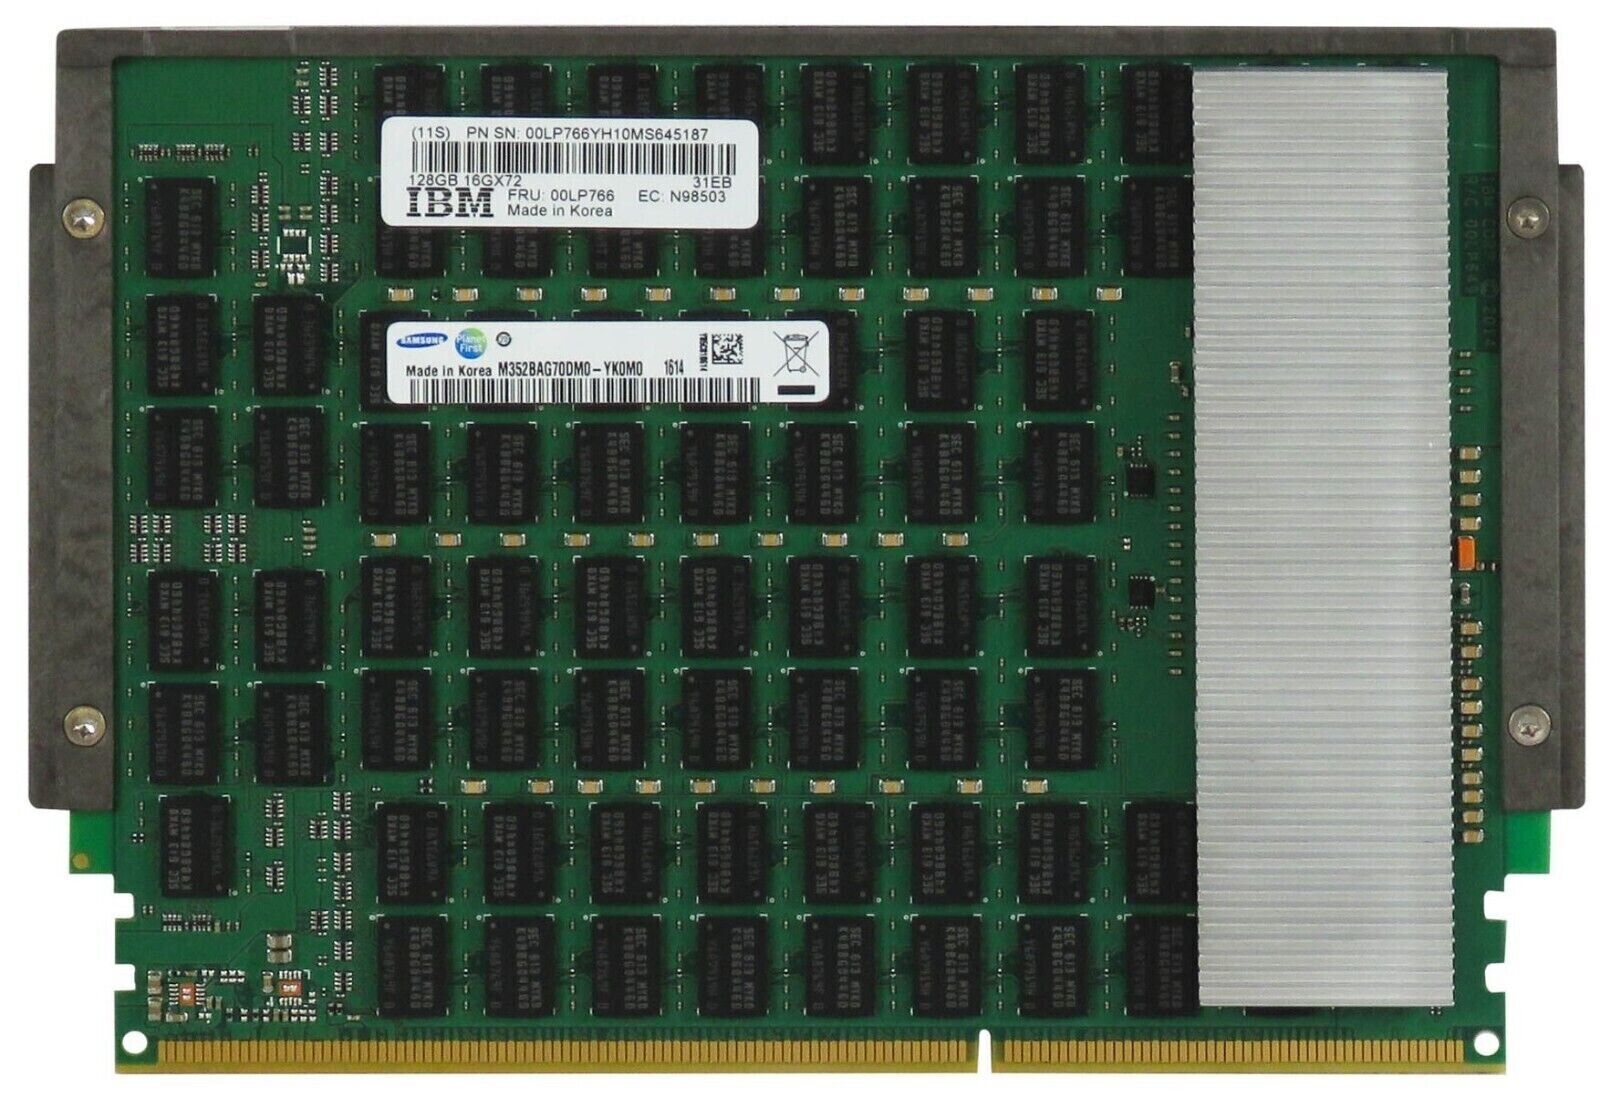 IBM 00LP766 128GB DDR3 16Gx72 CDIMM RAM Memory M352BAG70DM0-YK0M0